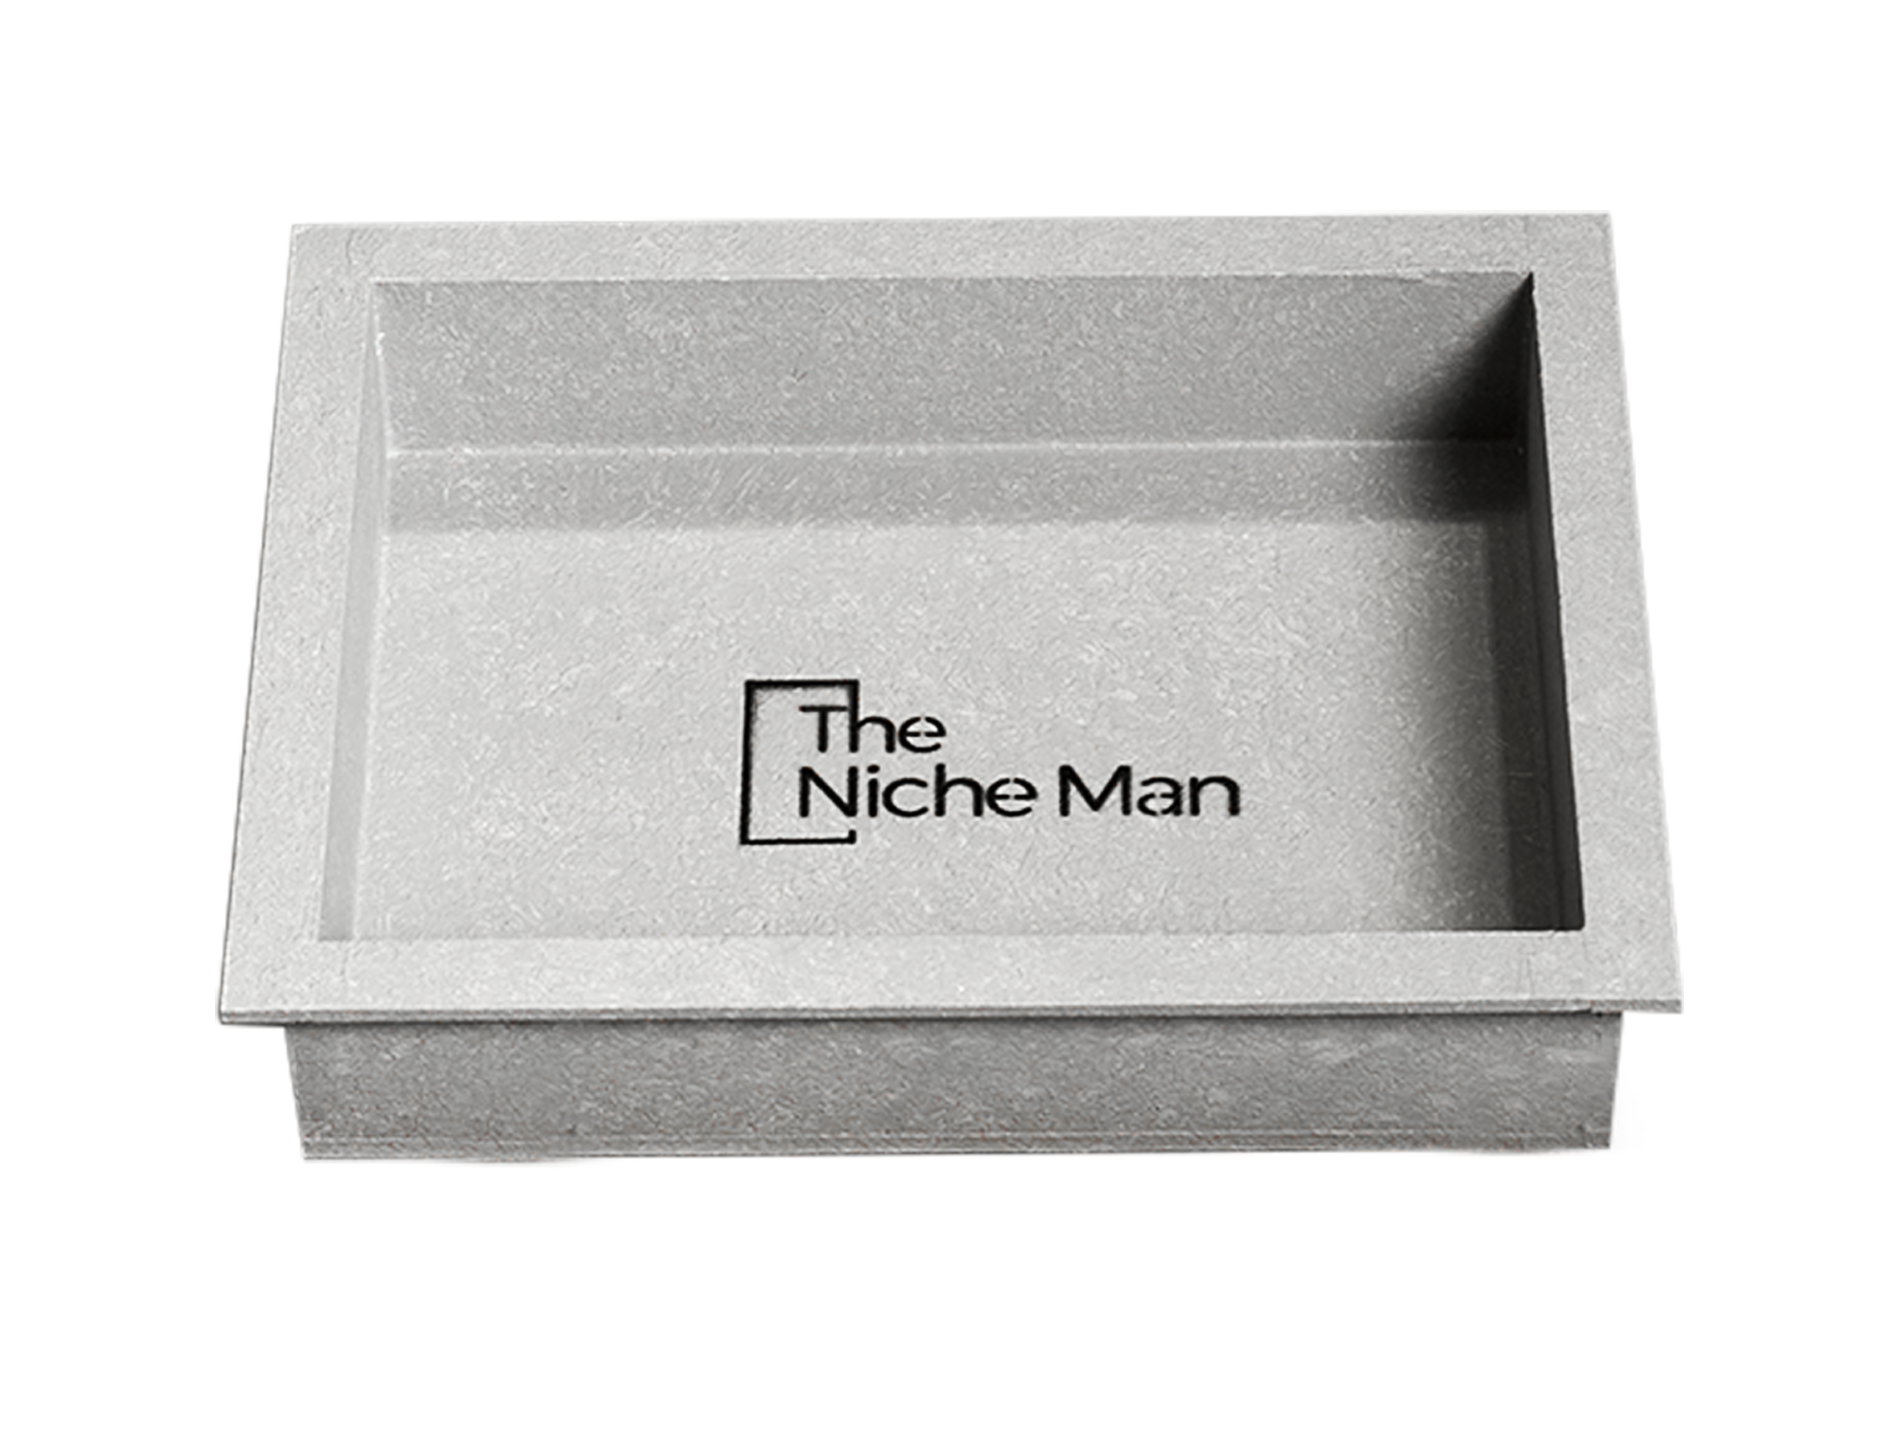 The Niche Man Shower niche waterproof shower recess